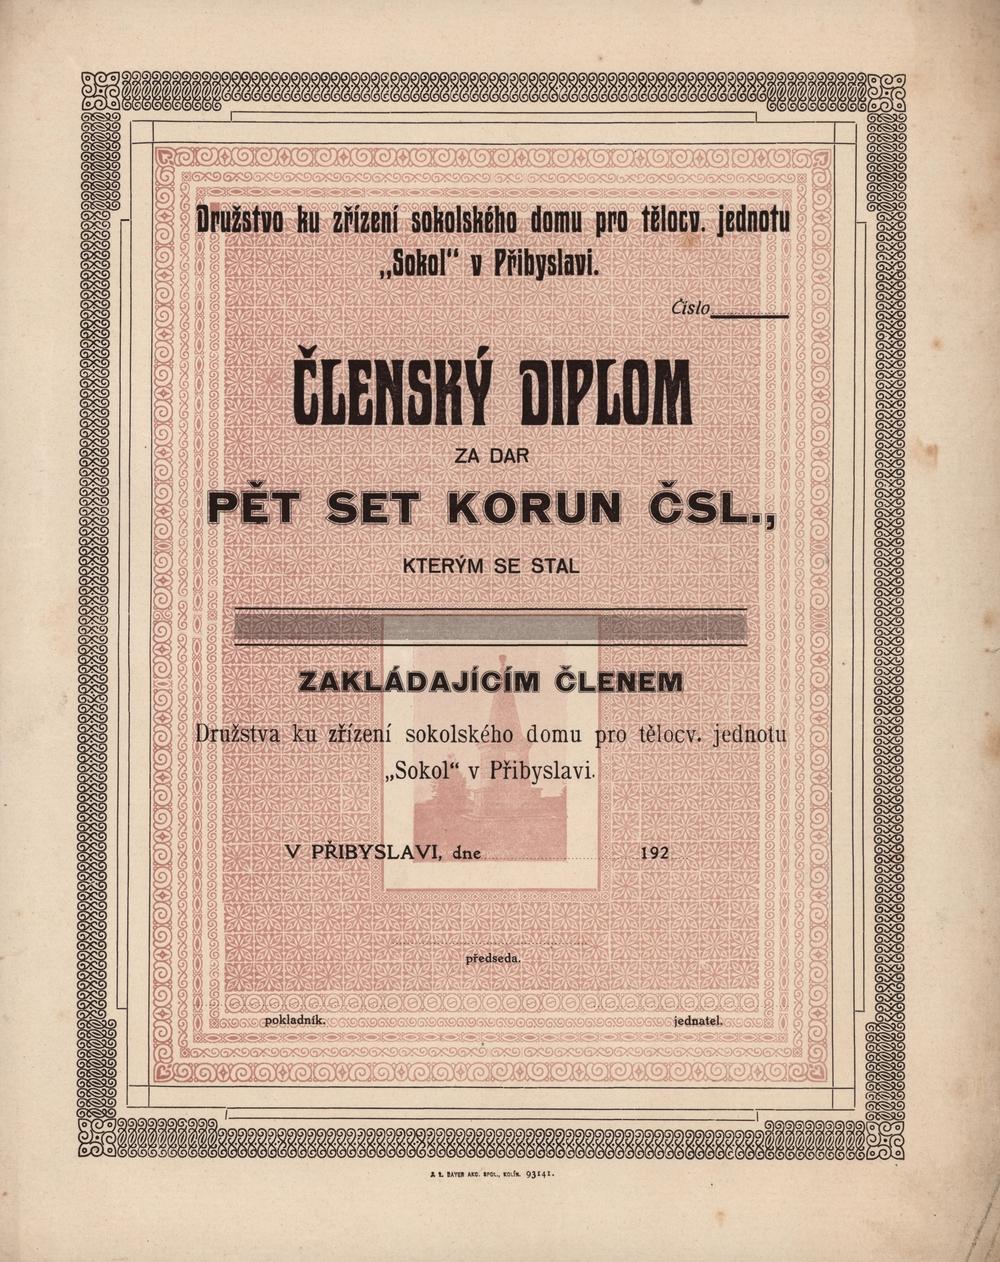 Členský diplom Družstva ku zřízení sokolského domu pro tělocvičnou jednotu SOKOL v Přibyslavi 1922, 500 Kč